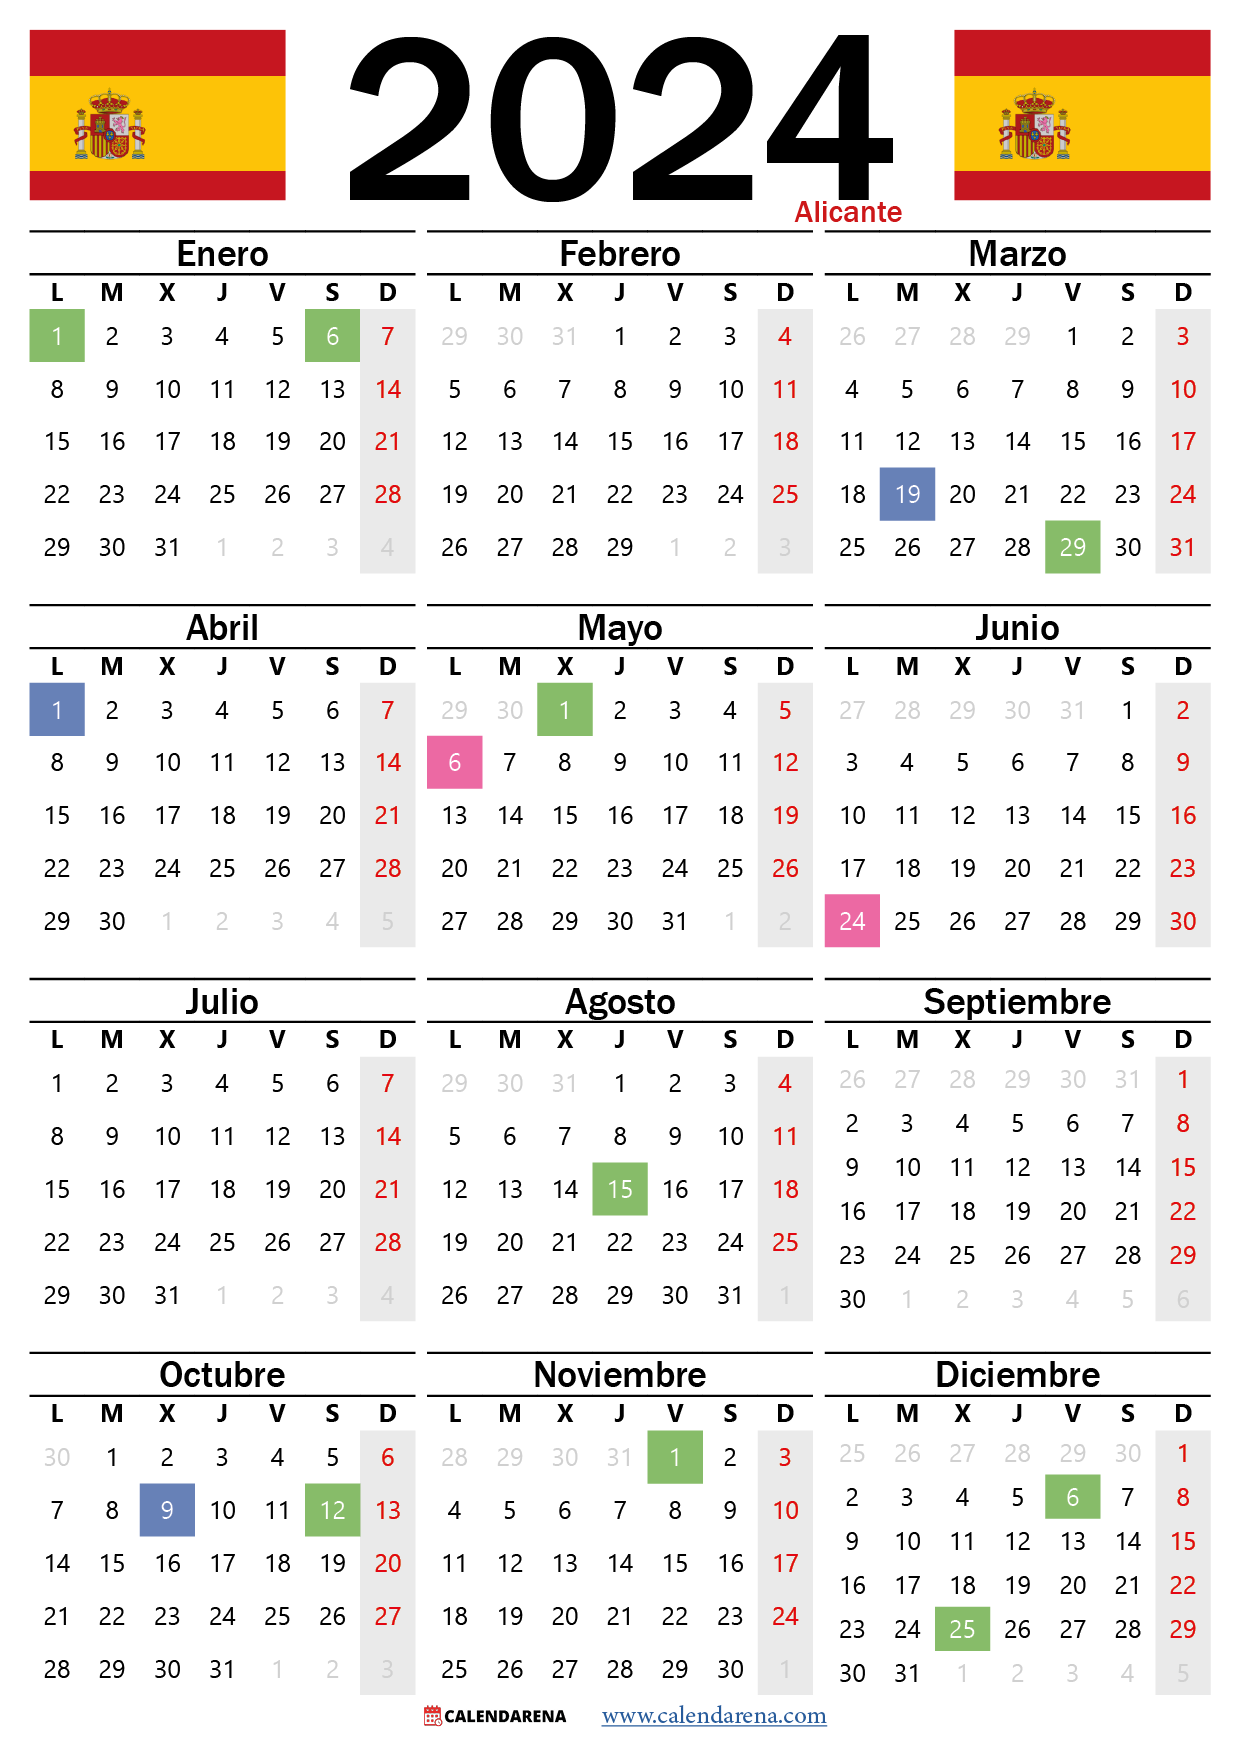 Calendario Laboral Alicante 2024